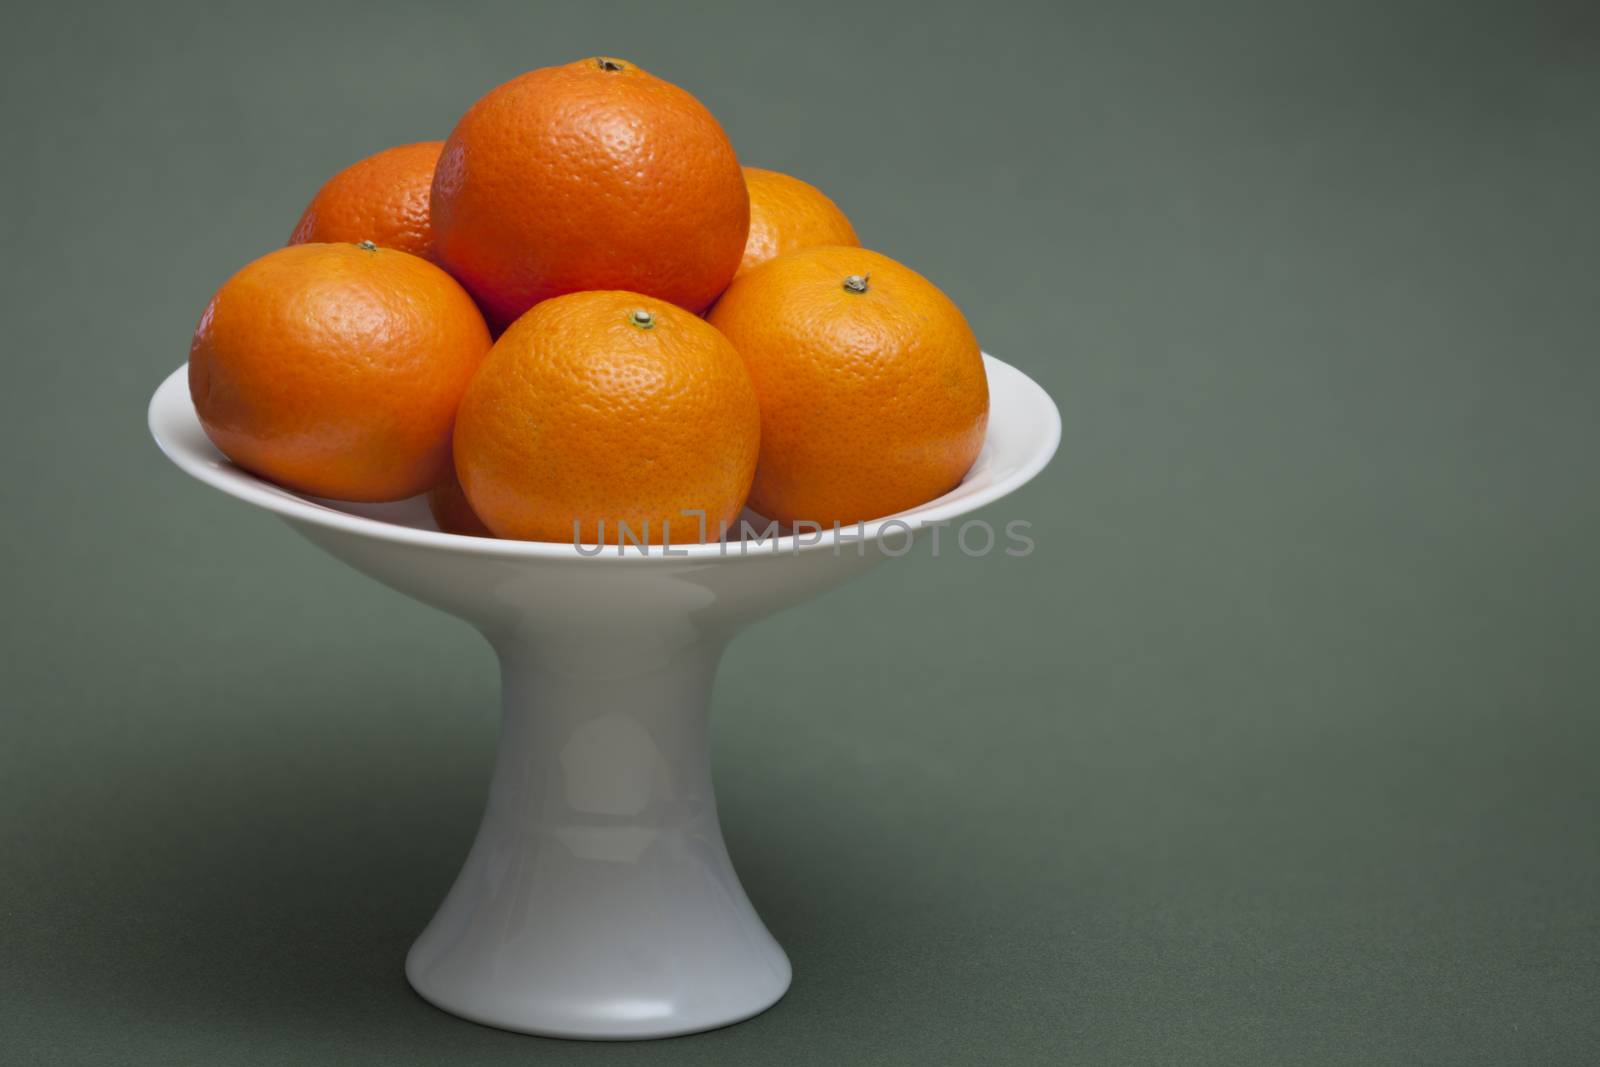 vase with mandarins by mrivserg